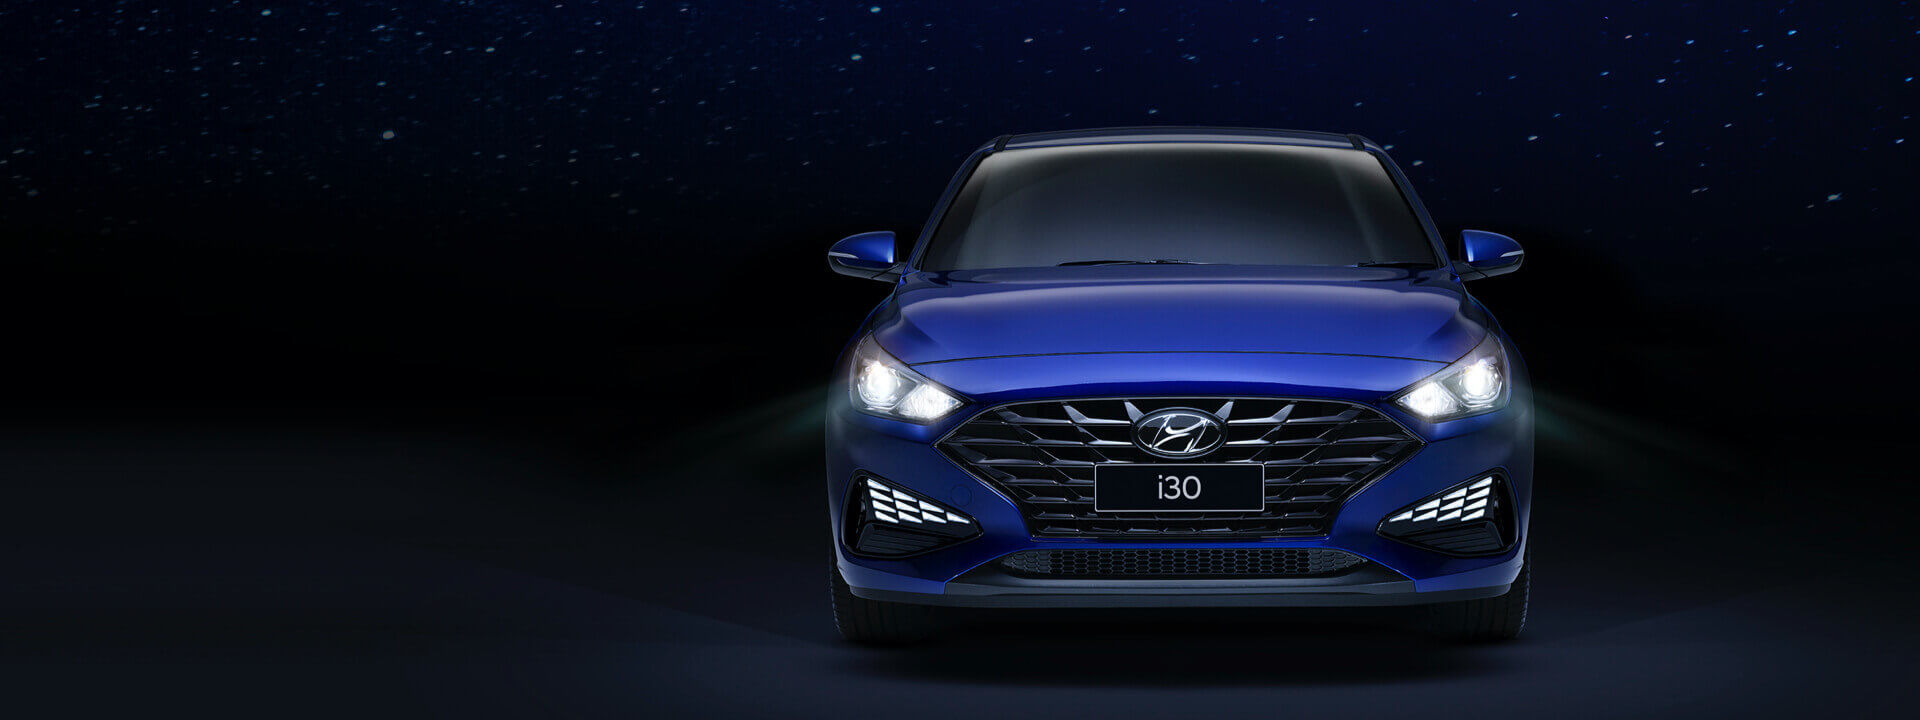 Hyundai_i30-Hatch_header_1920x720.jpg